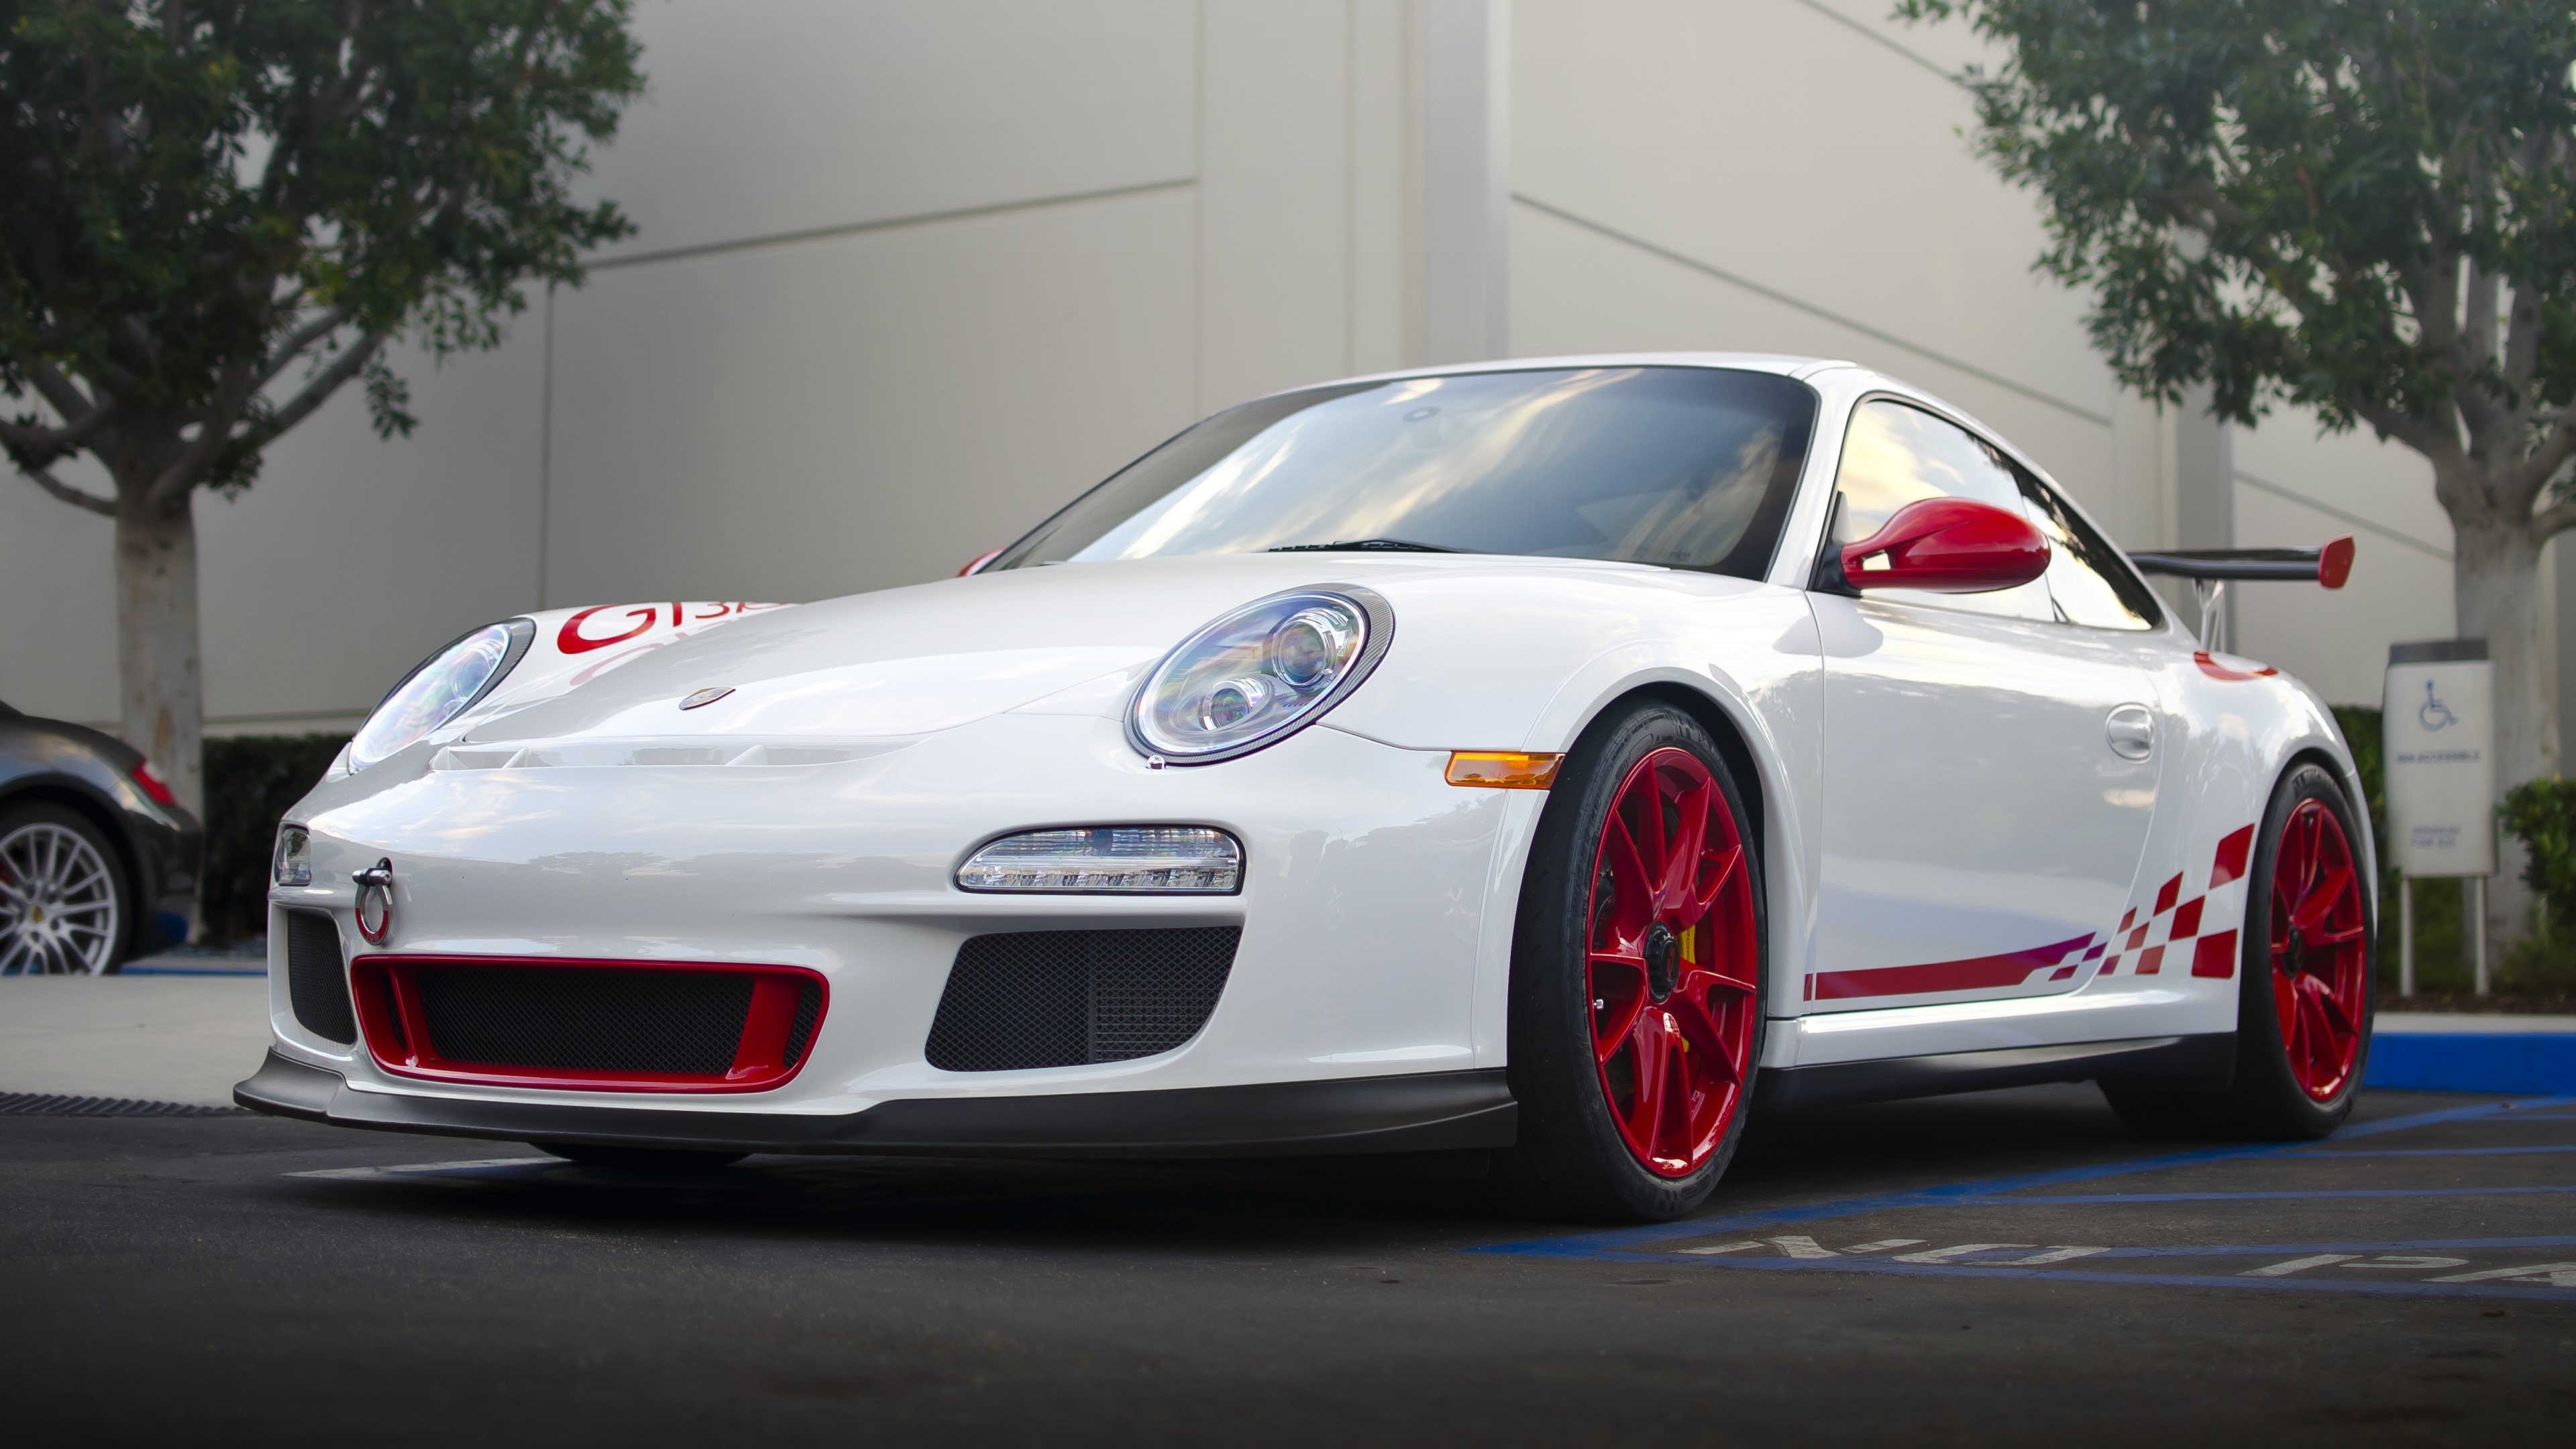 Descargar fondos de escritorio de Porsche 911 Gt3 Rs HD